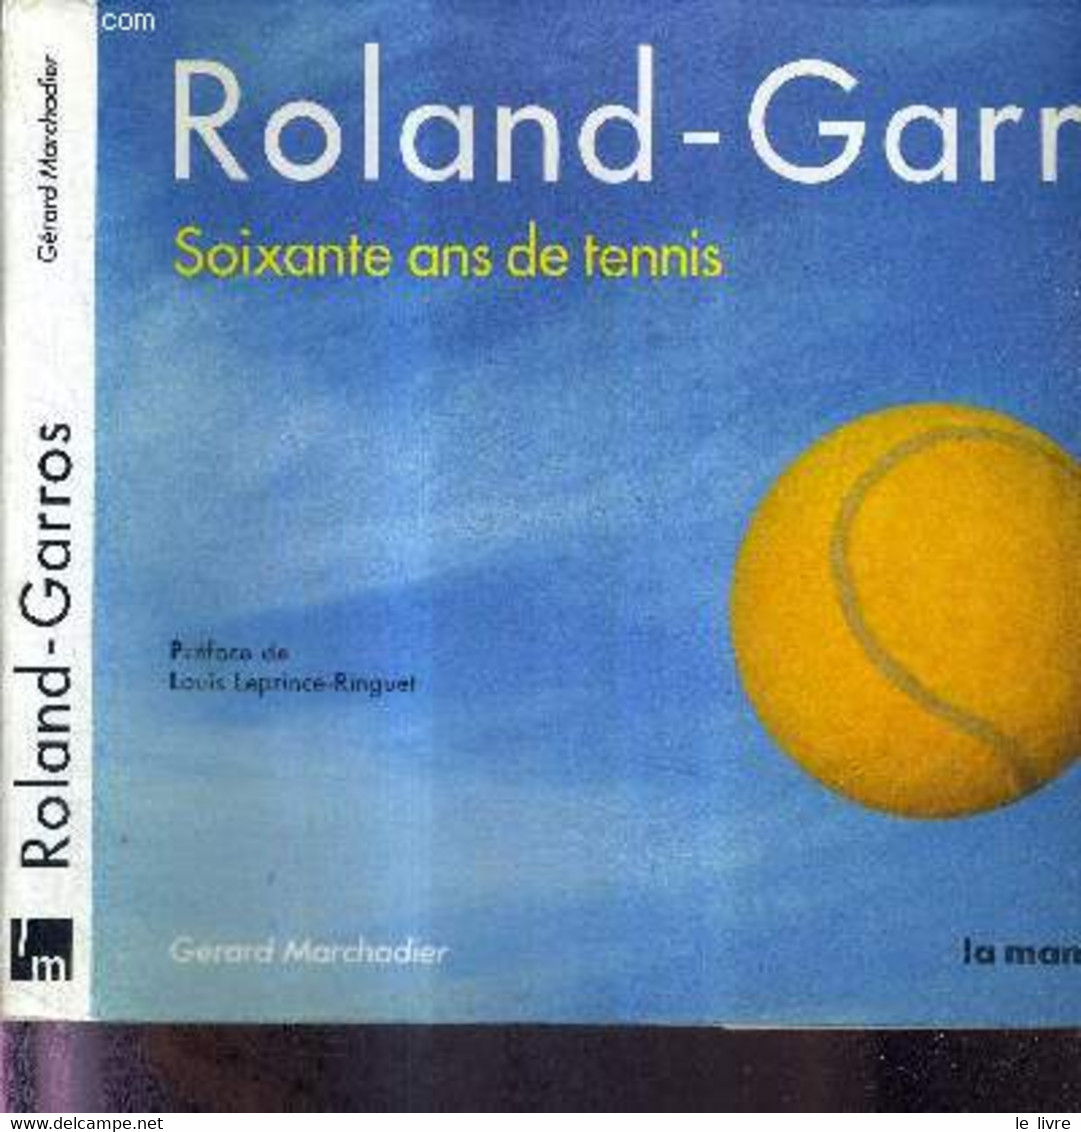 ROLAND-GARROS - SOIXANTE ANS DE TENNIS + DEDICACE DE Arantxa Sánchez Vicario - MARCHADIER GERARD - 1986 - Bücher